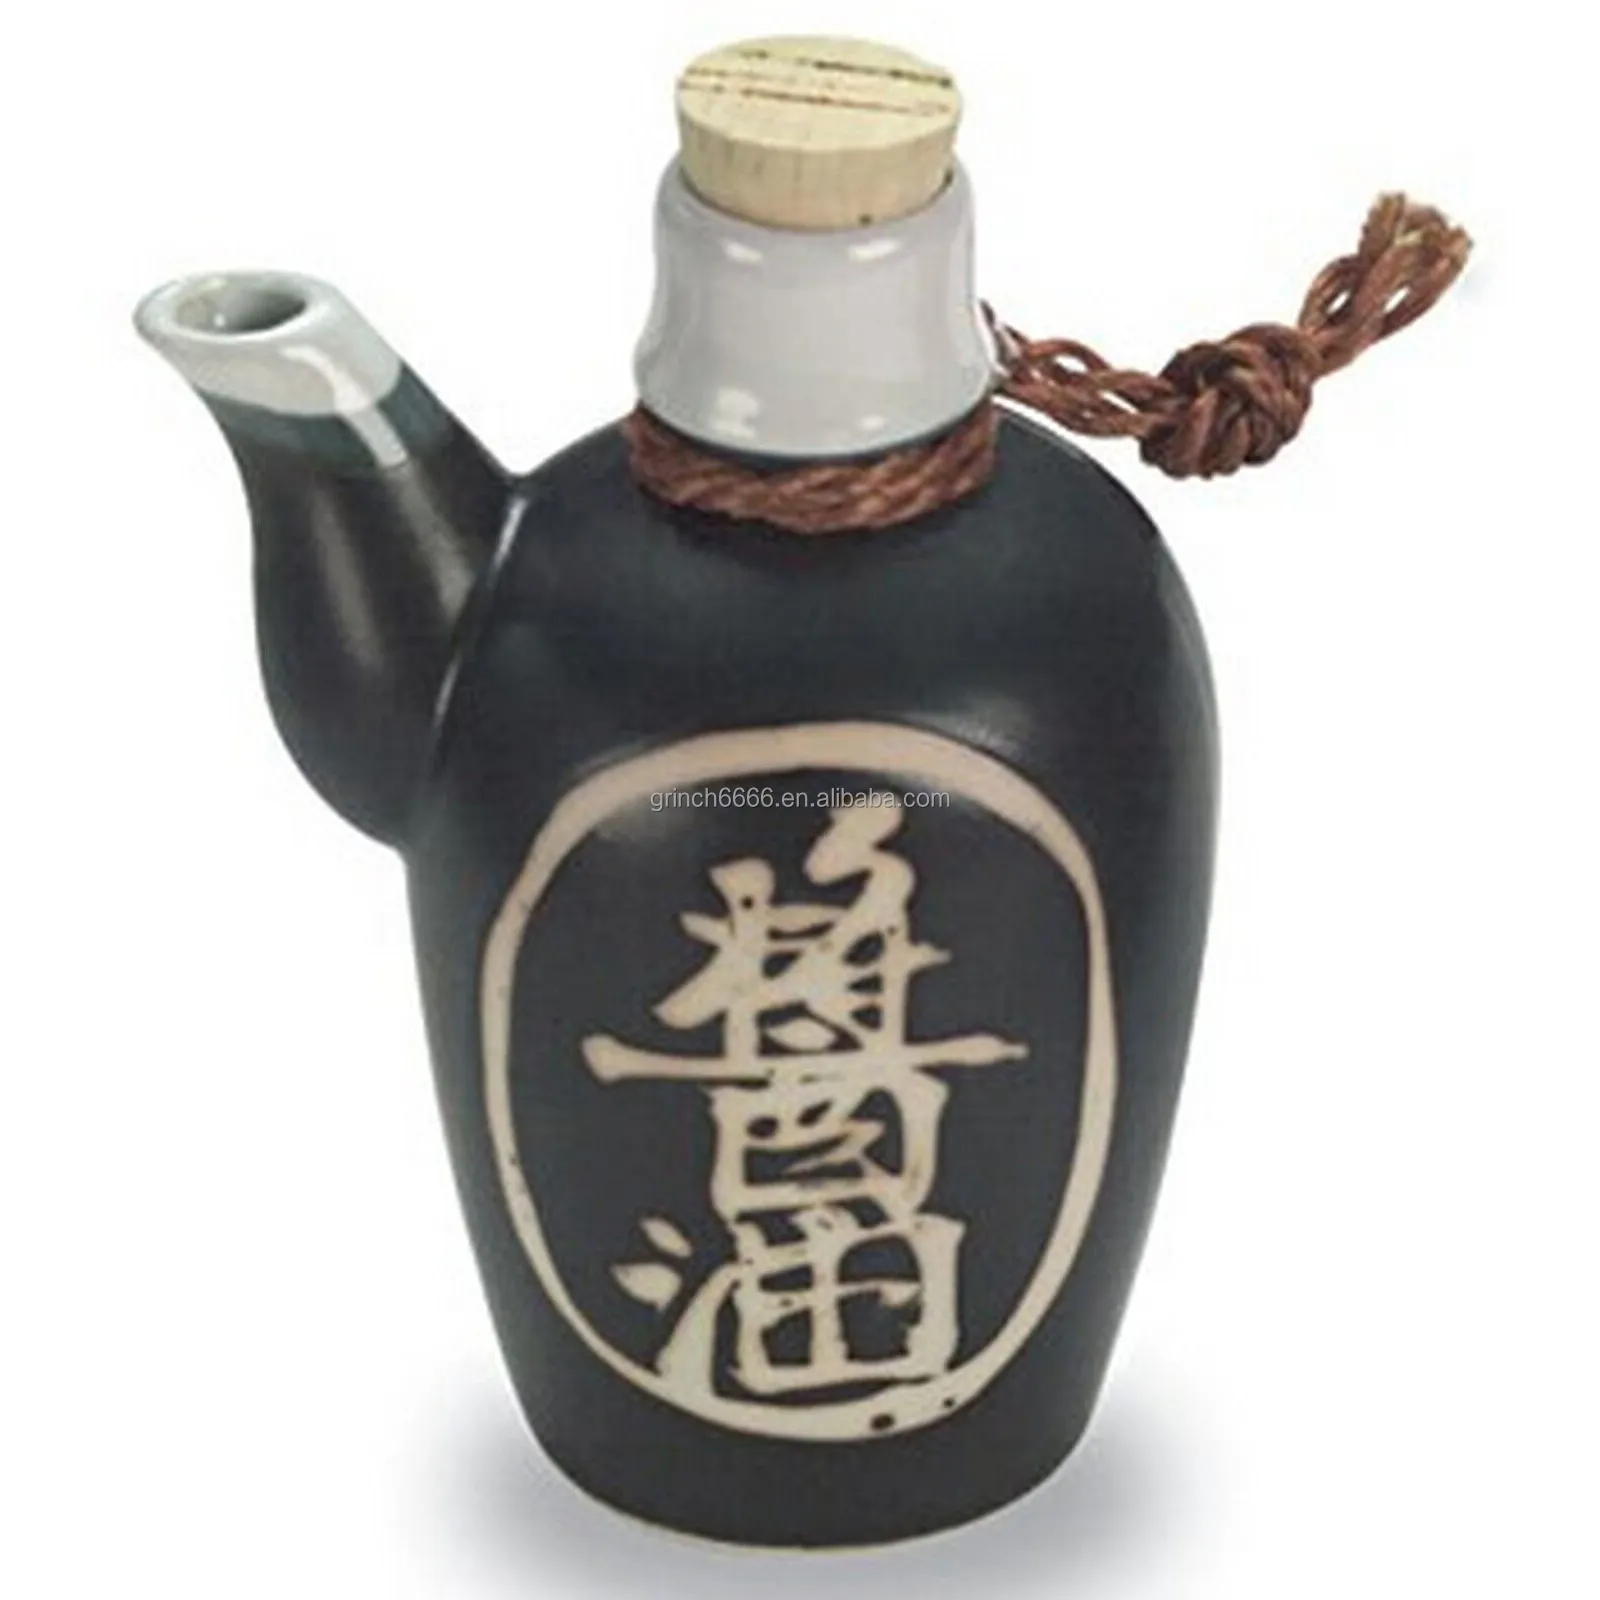 Dispensador de porcelana japonesa para salsa de soja, frasco de cerámica japonesa para salsa de soja, vinagre y aceite